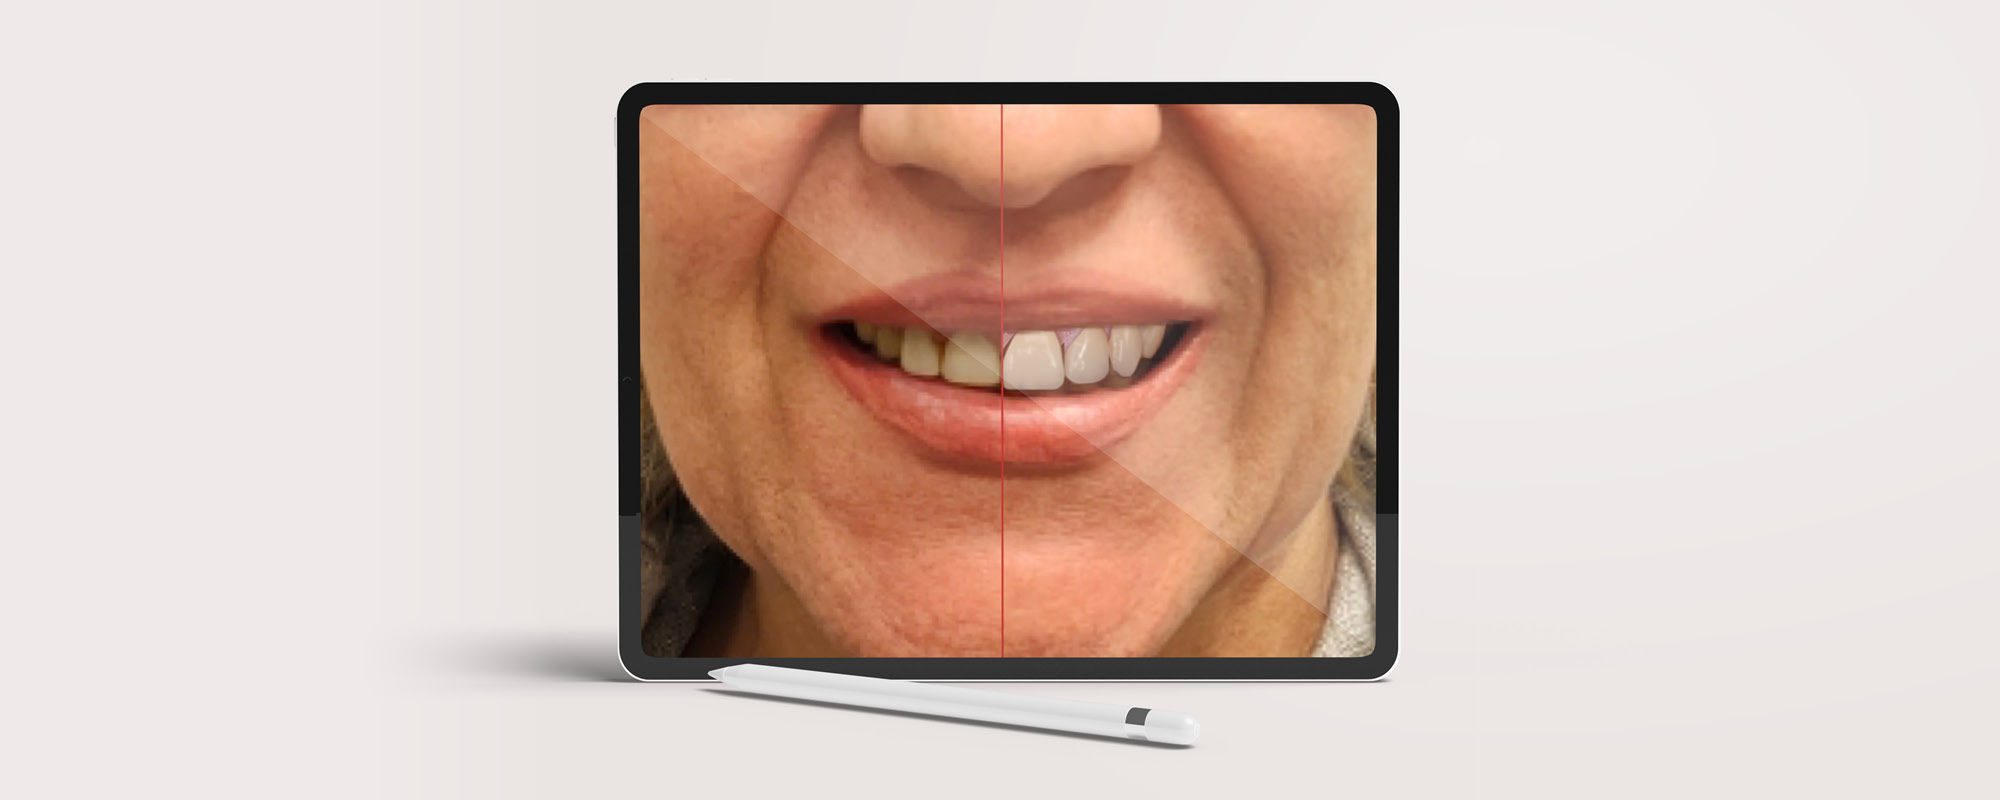 Faccette dentali estetiche: cosa aspettarsi dal trattamento con Smile Design negli studi Brush